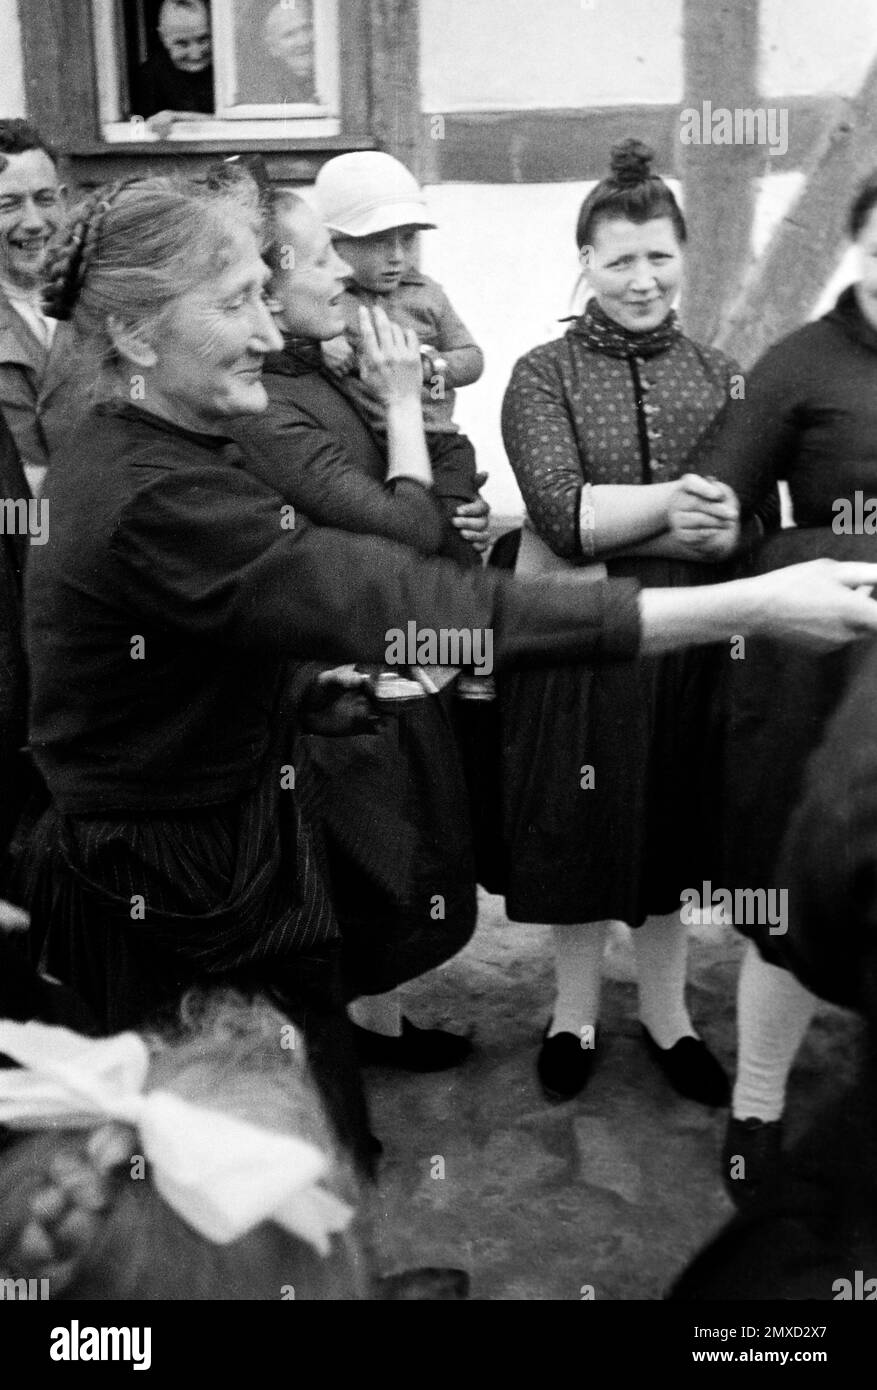 Dorffrauen am Ostersonntag, Schwalm-Eder-Kreis in Hessen, 1938. Village women on Easter Sunday, Schwalm-Eder region in Hesse, 1938. Stock Photo